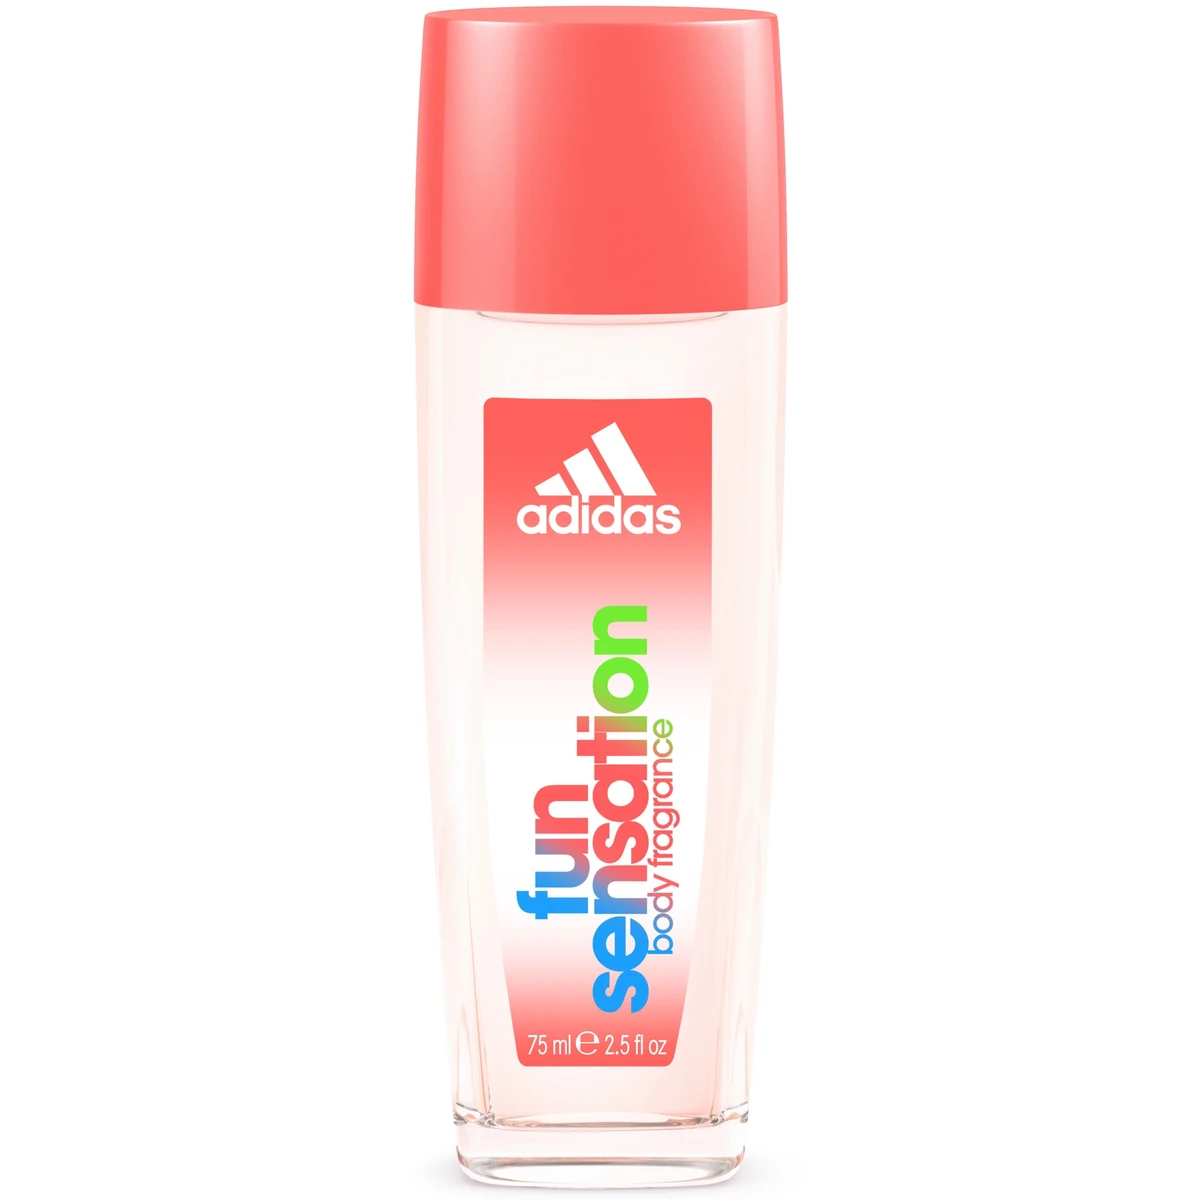 Adidas Fun Sensation hajtógáz nélküli pumpás parfüm dezodor nőknek 75 ml